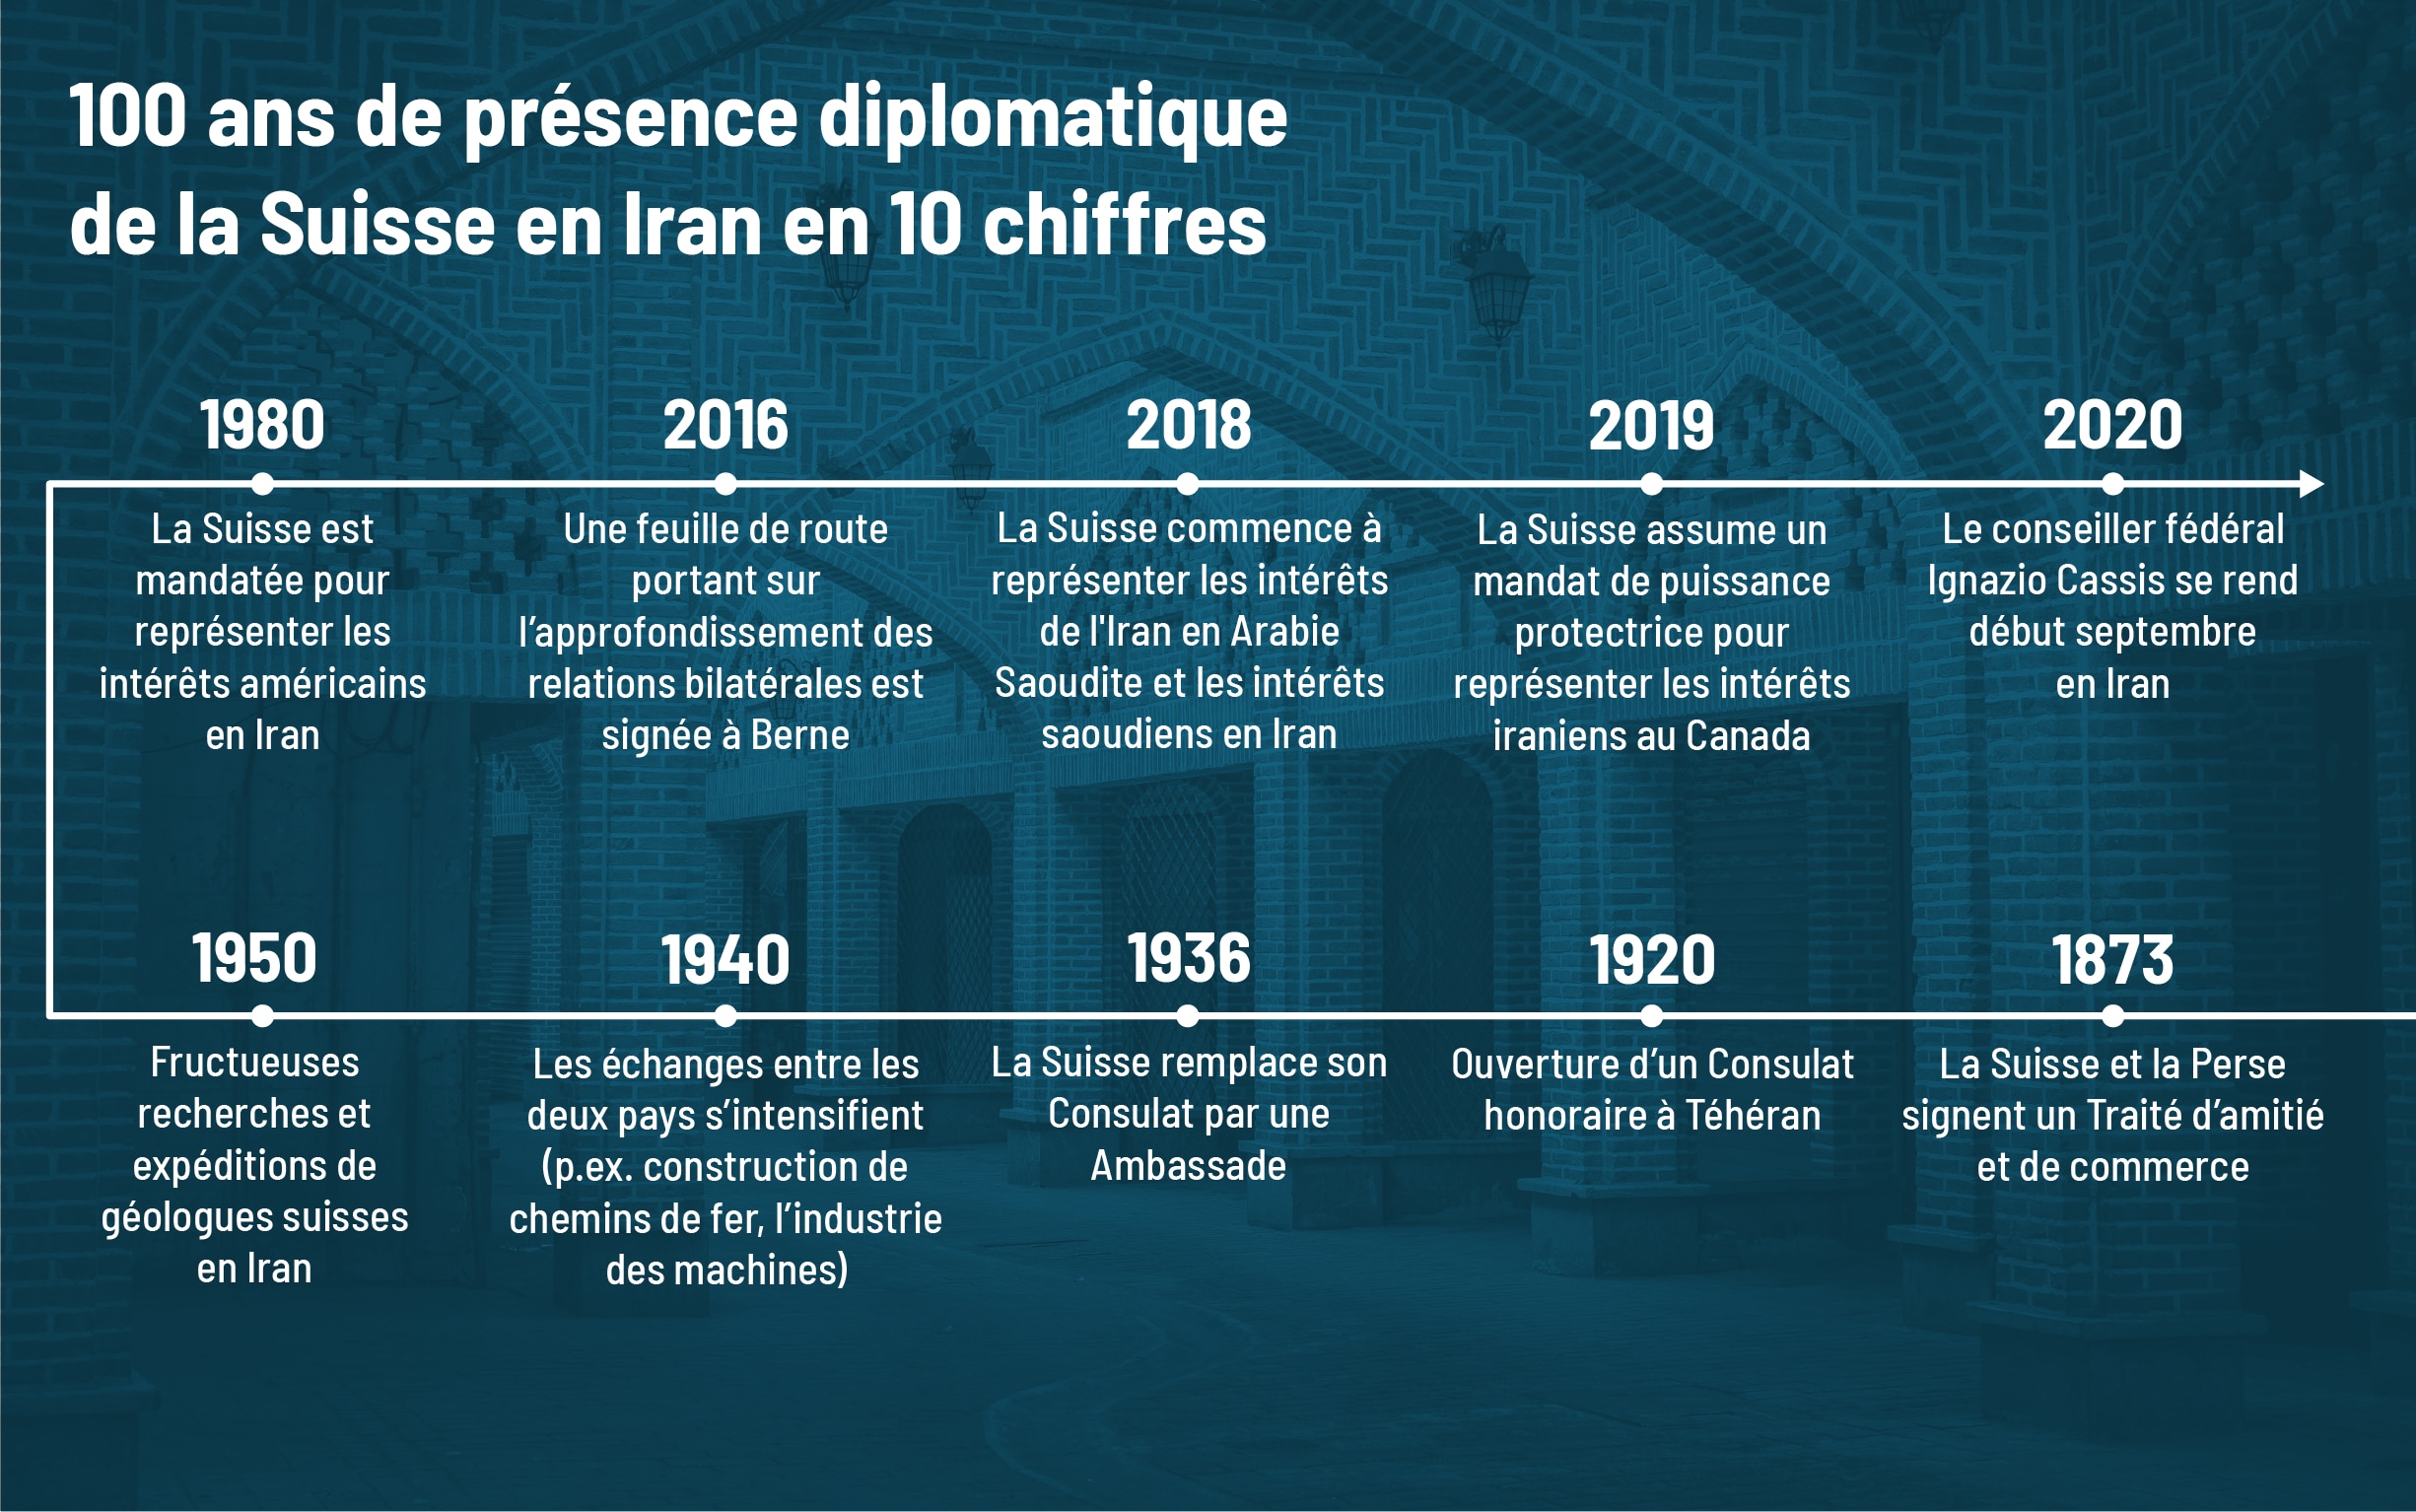 Infographie sur les 100 ans de présence diplomatique de la Suisse en Iran en 10 chiffres.